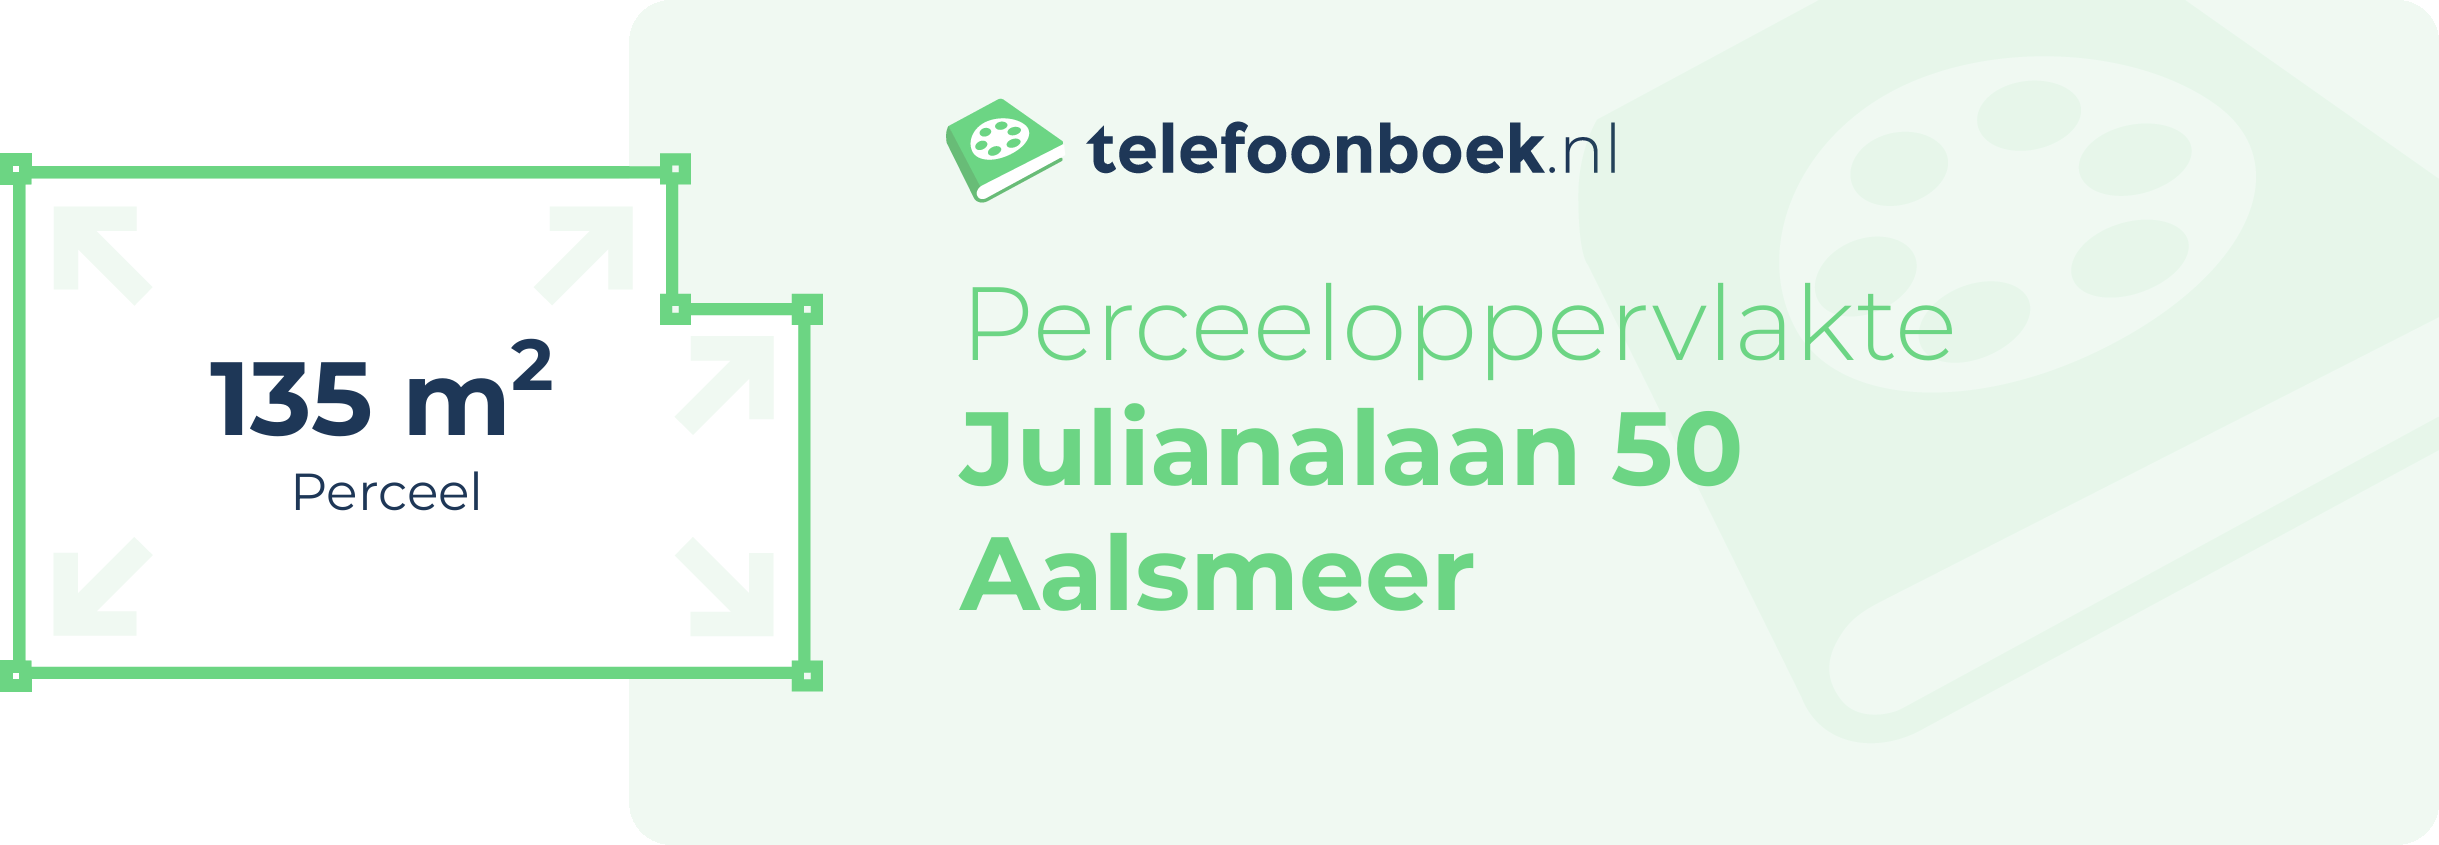 Perceeloppervlakte Julianalaan 50 Aalsmeer